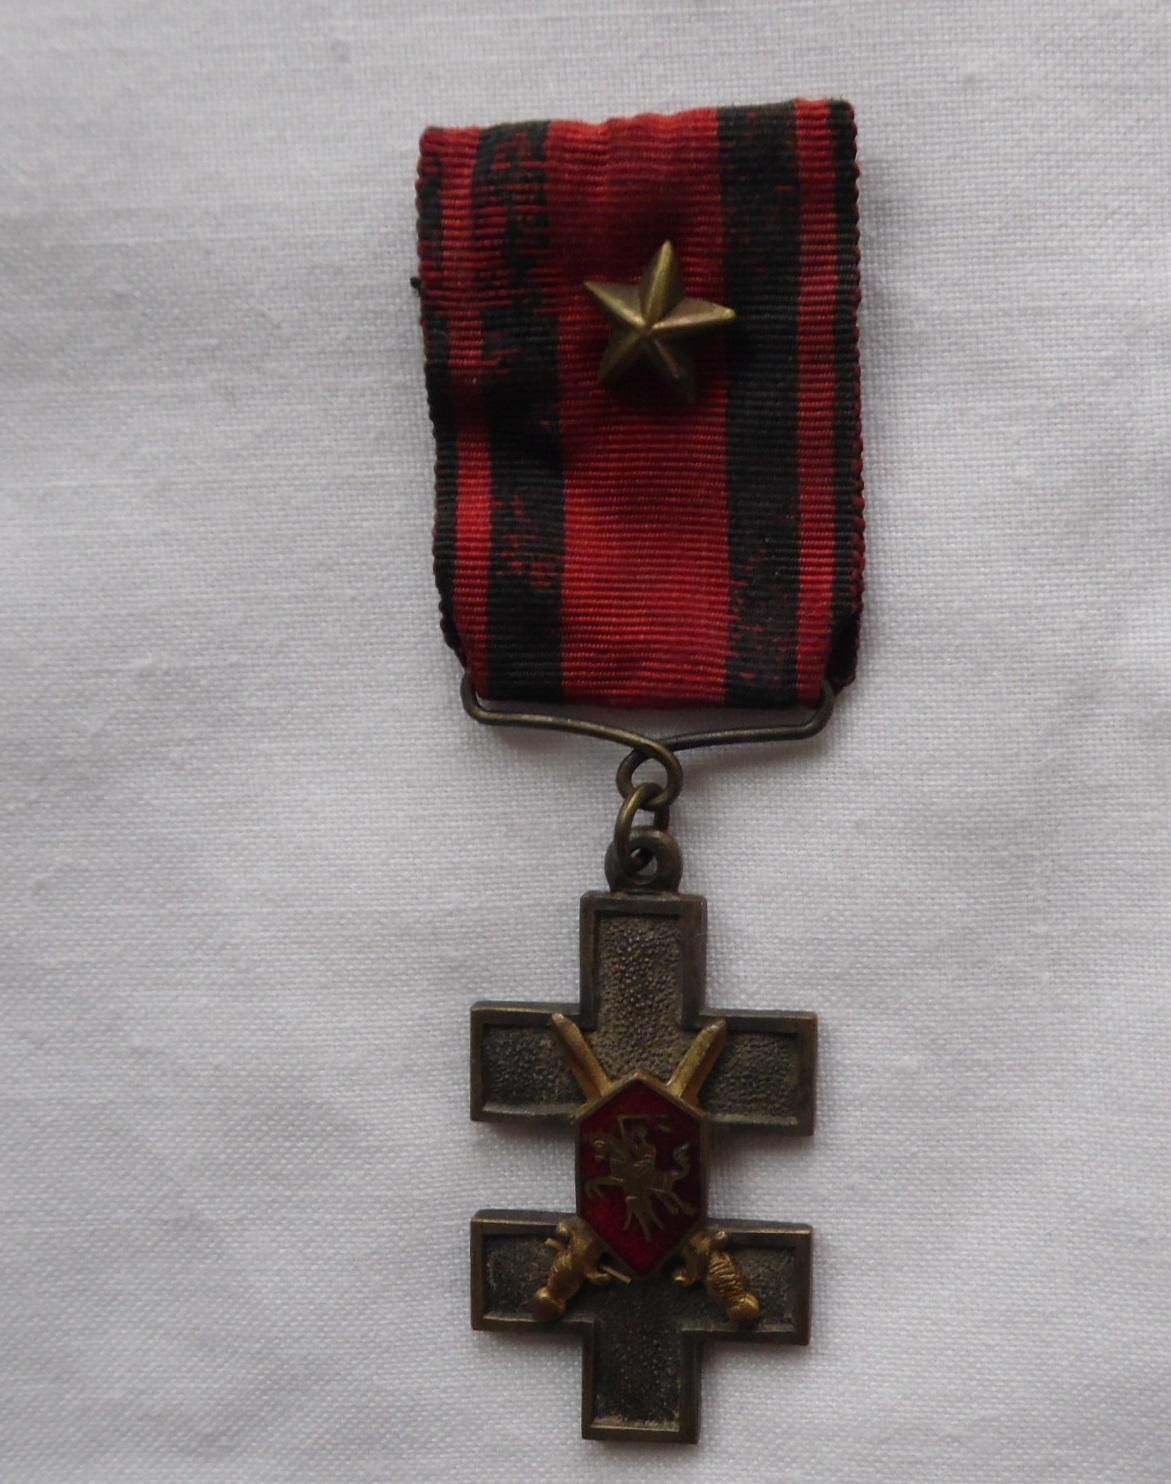 Крест Витиса "За храбрость" 1920 года 1 класса, 1 степени. Из коллекции Г. Сакалаускаса